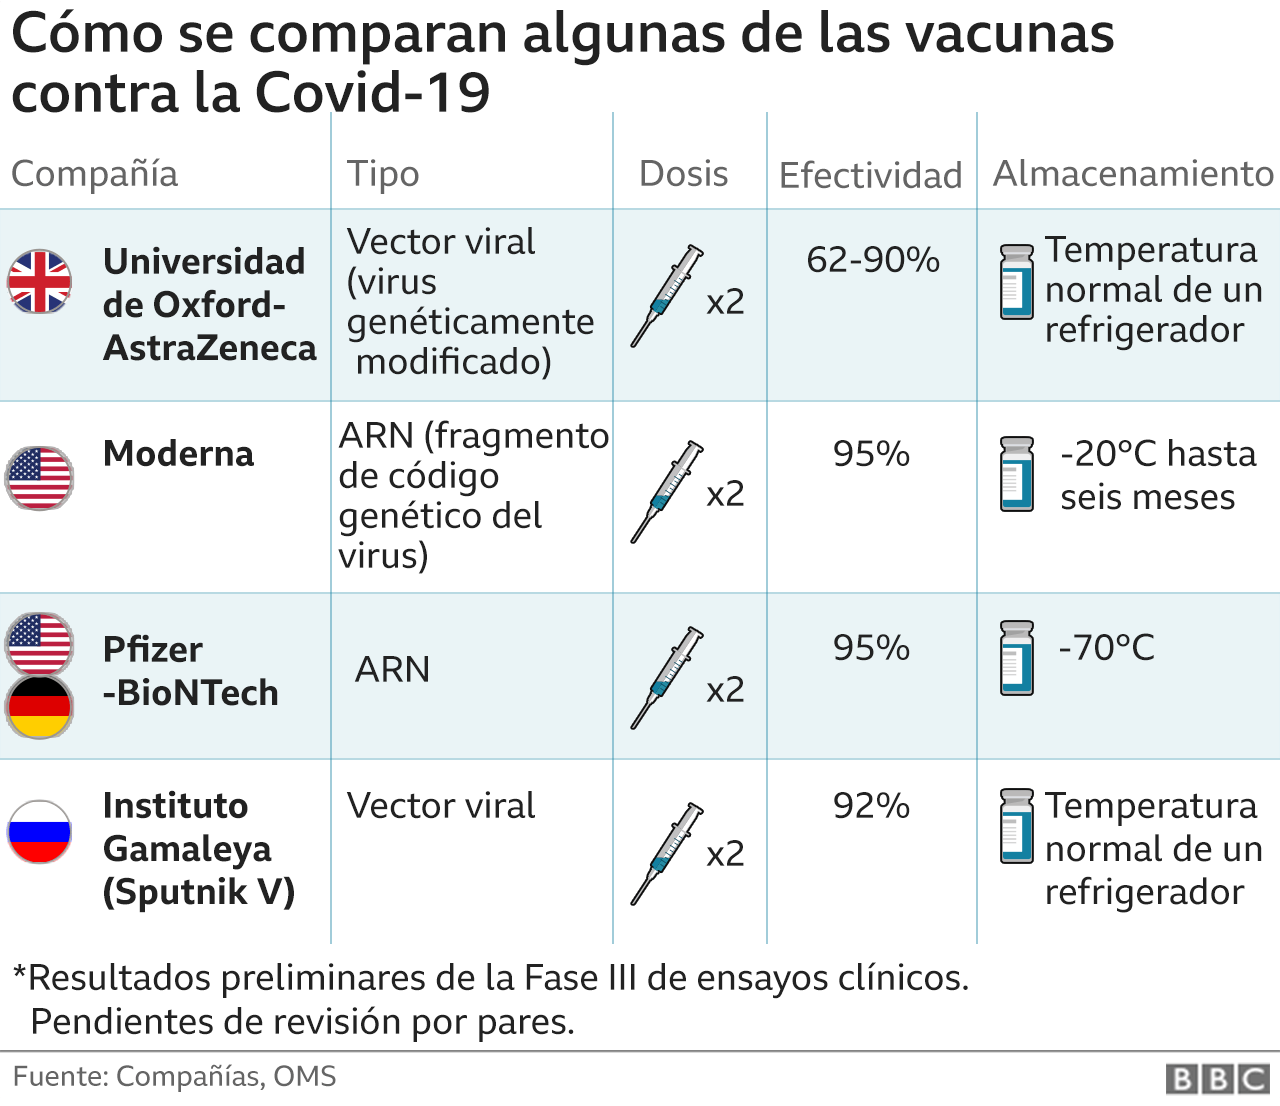 Cómo se comparan las vacunas en la Fase III de los ensayos clínicos